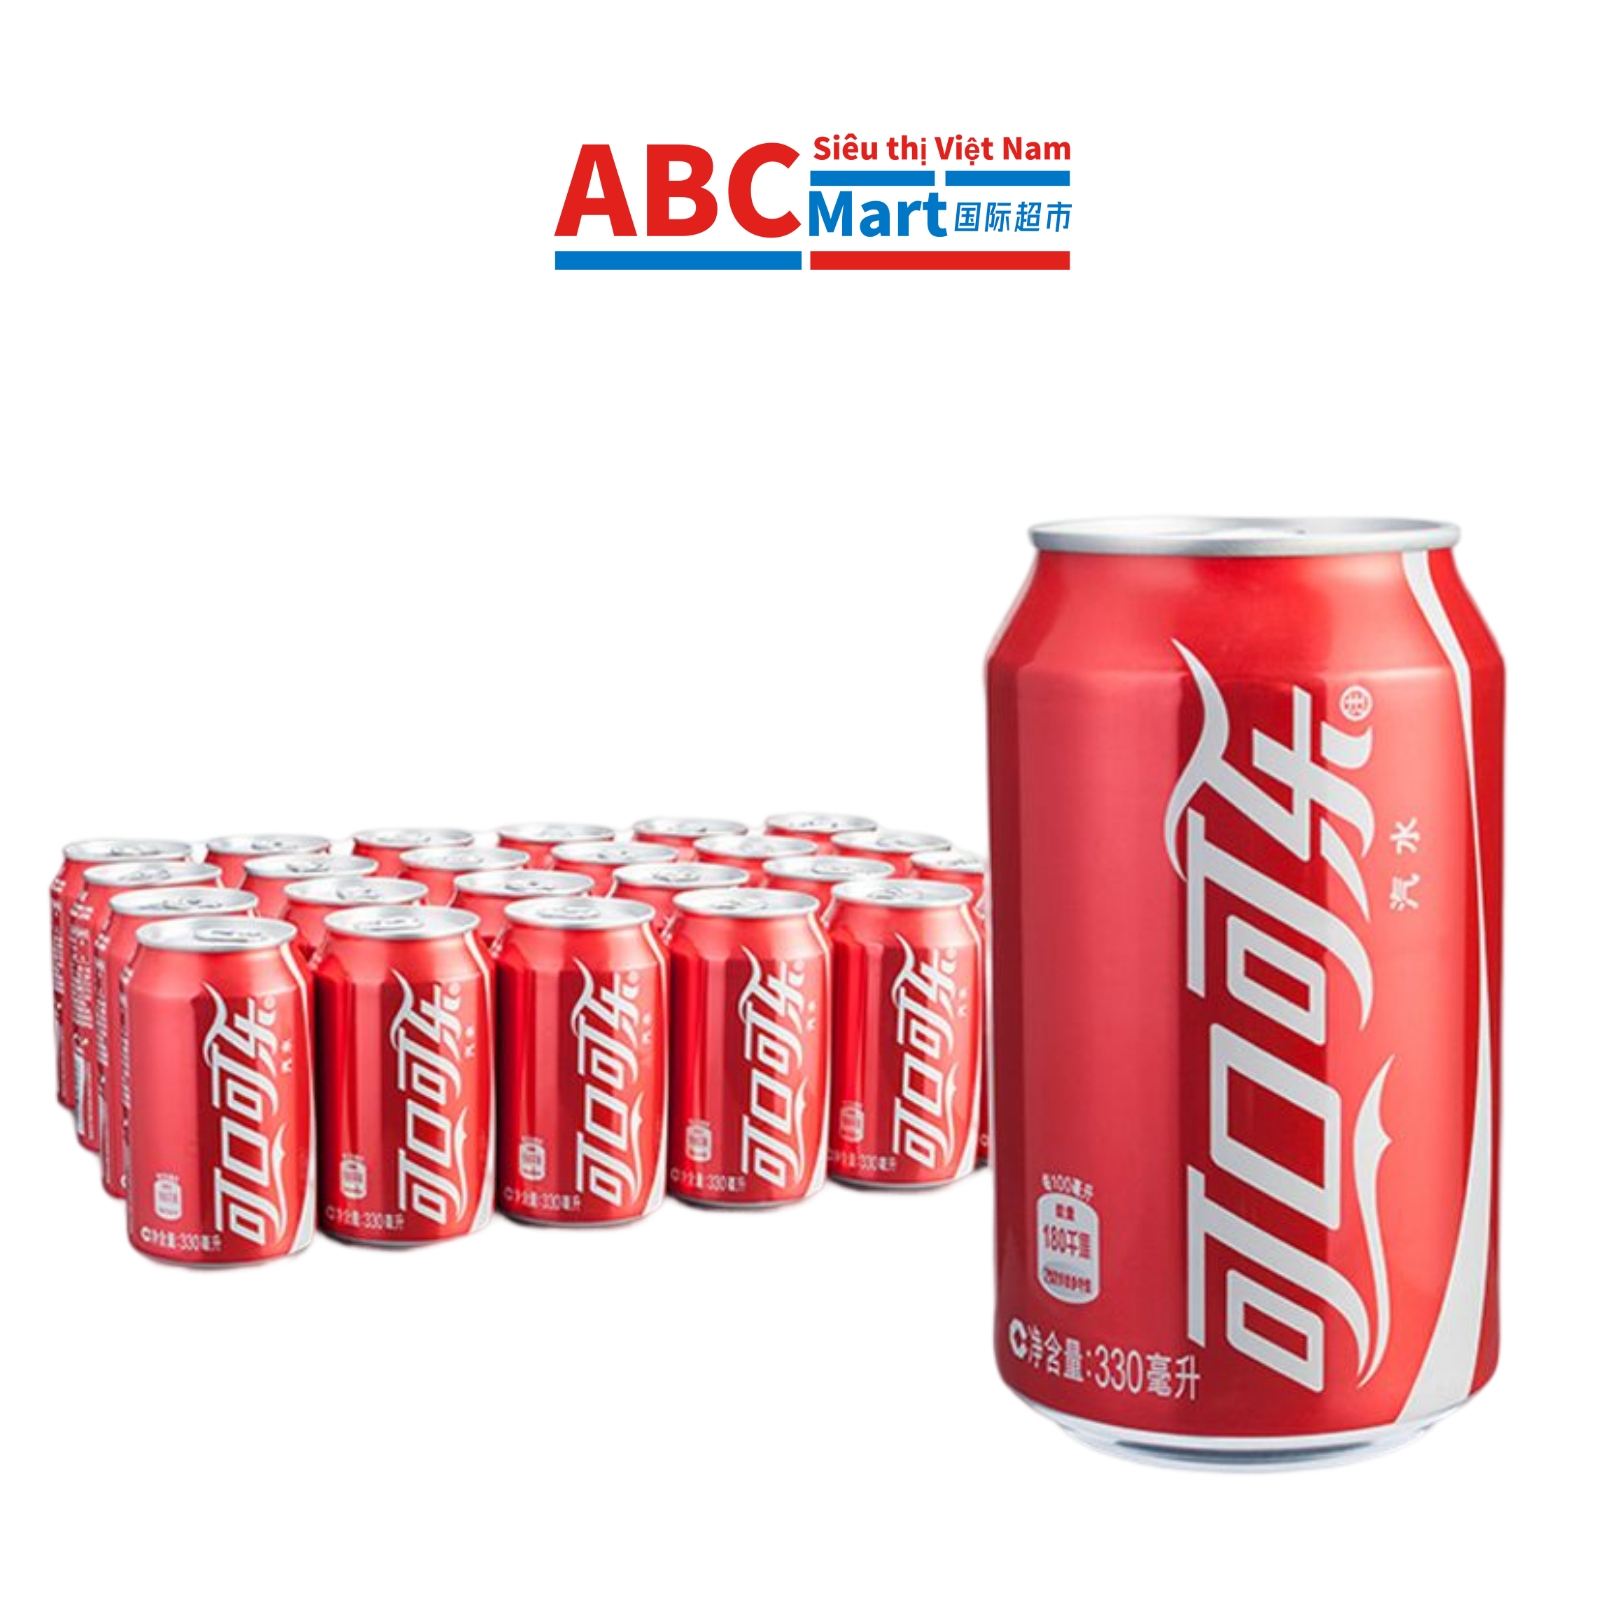 【中国-可口可乐330ml】整箱24罐-ABCMart 国际超市